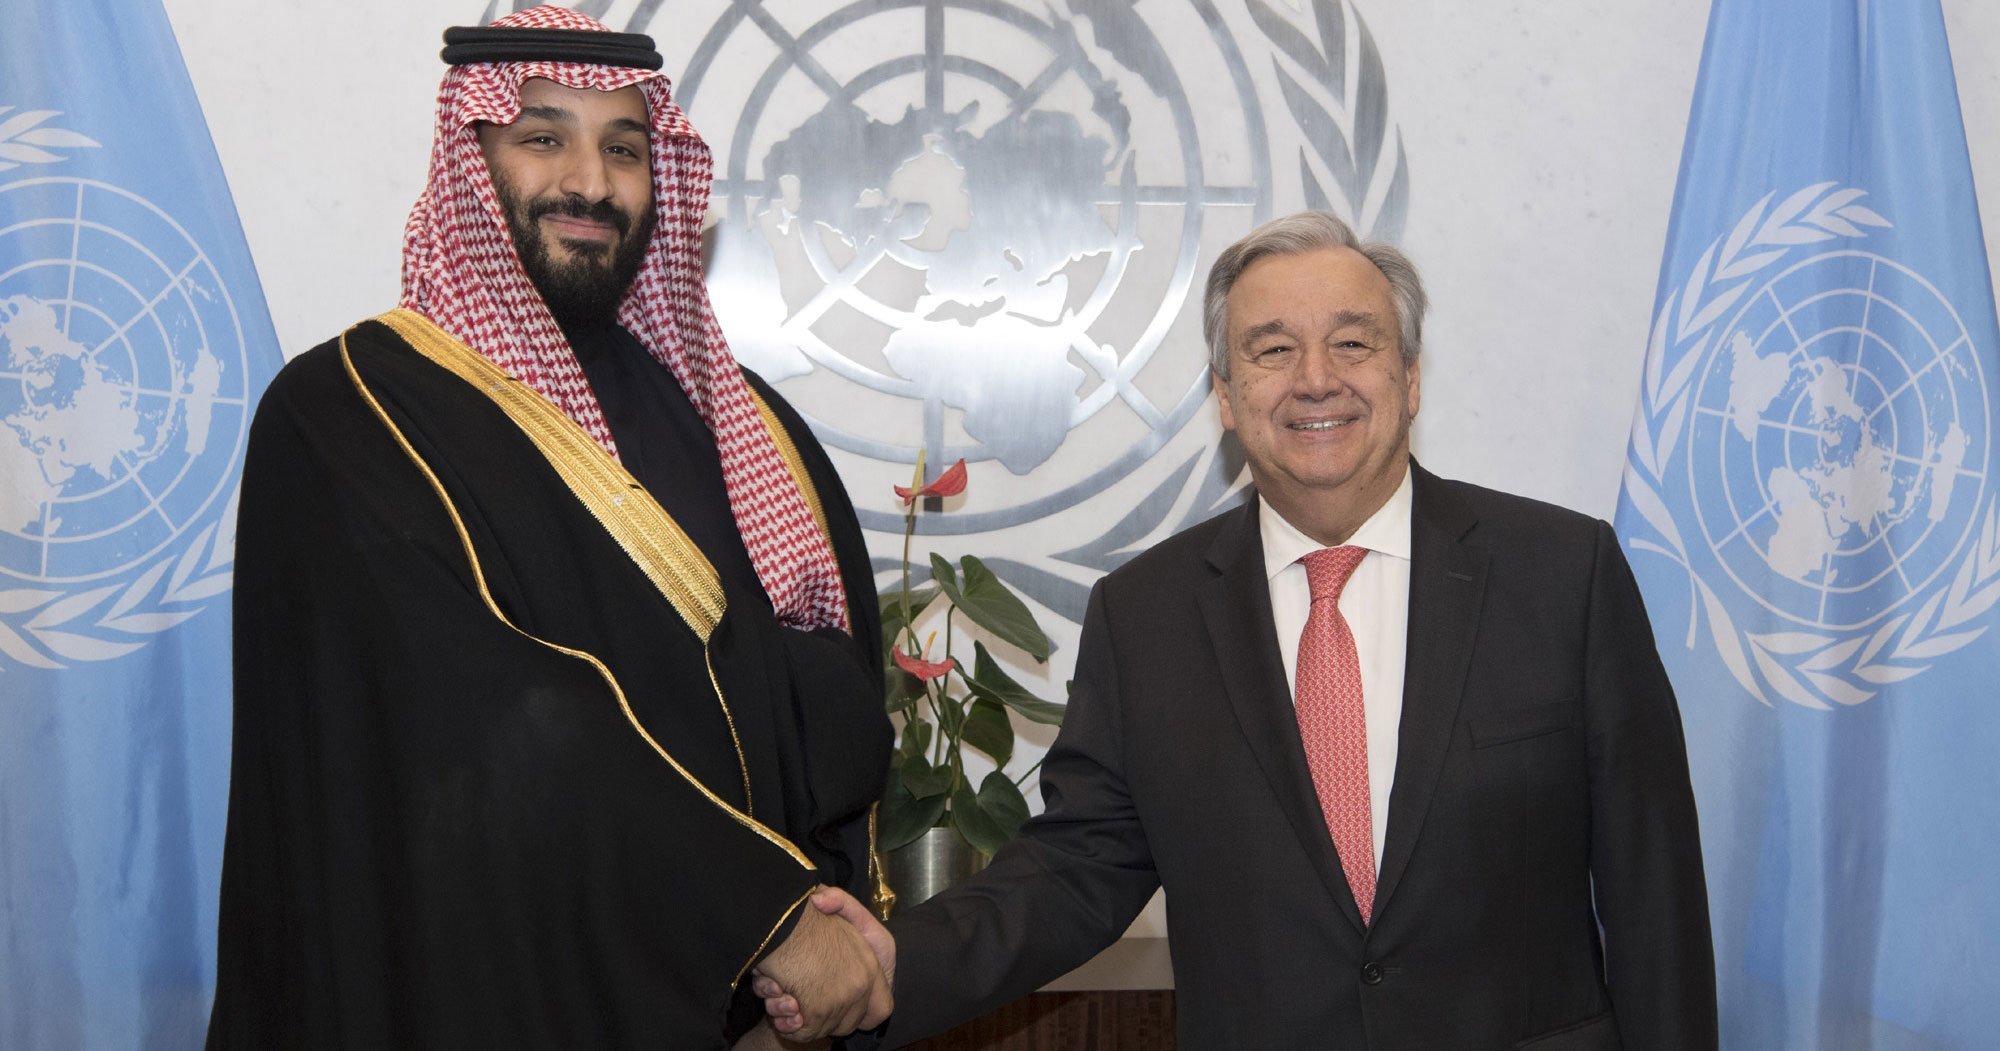  Le Secrétaire Général Antonio Guterres rencontre le Prince Mohammed bin Salman Al Saoud, Prince héritier du Royaume d'Arabie Saoudite